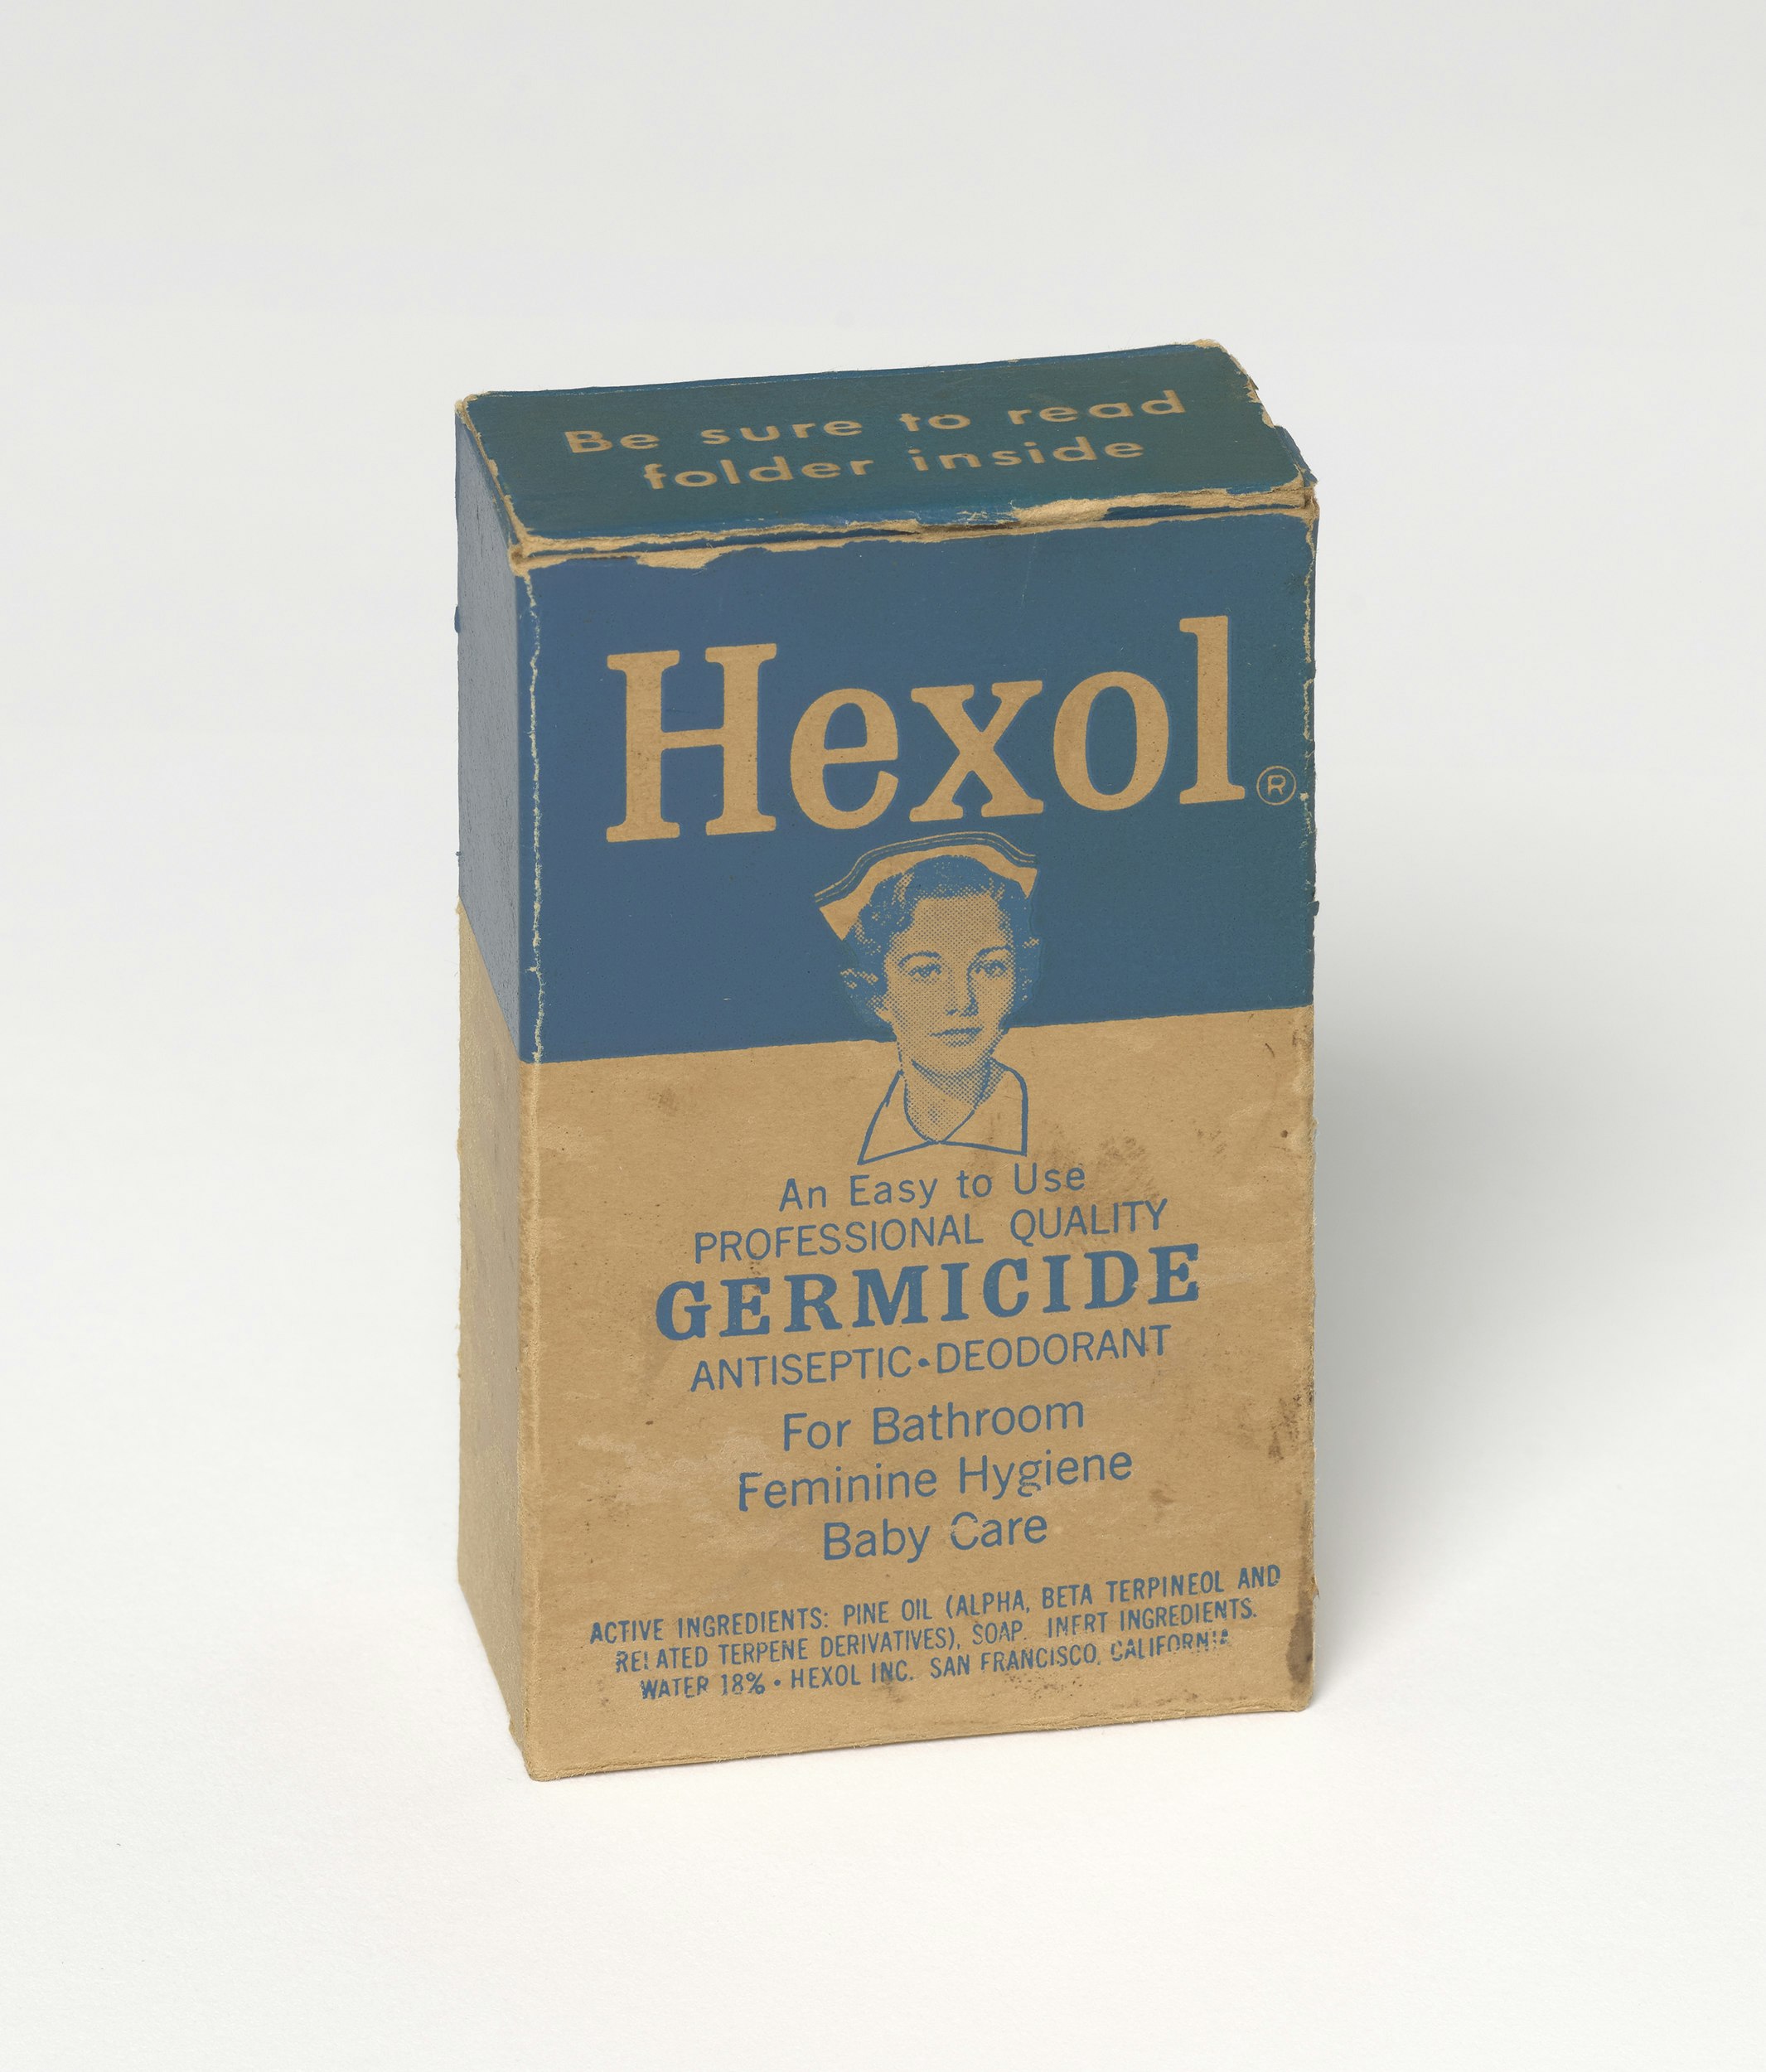 Hexol Germicide Box Schlesinger 990141243870203941